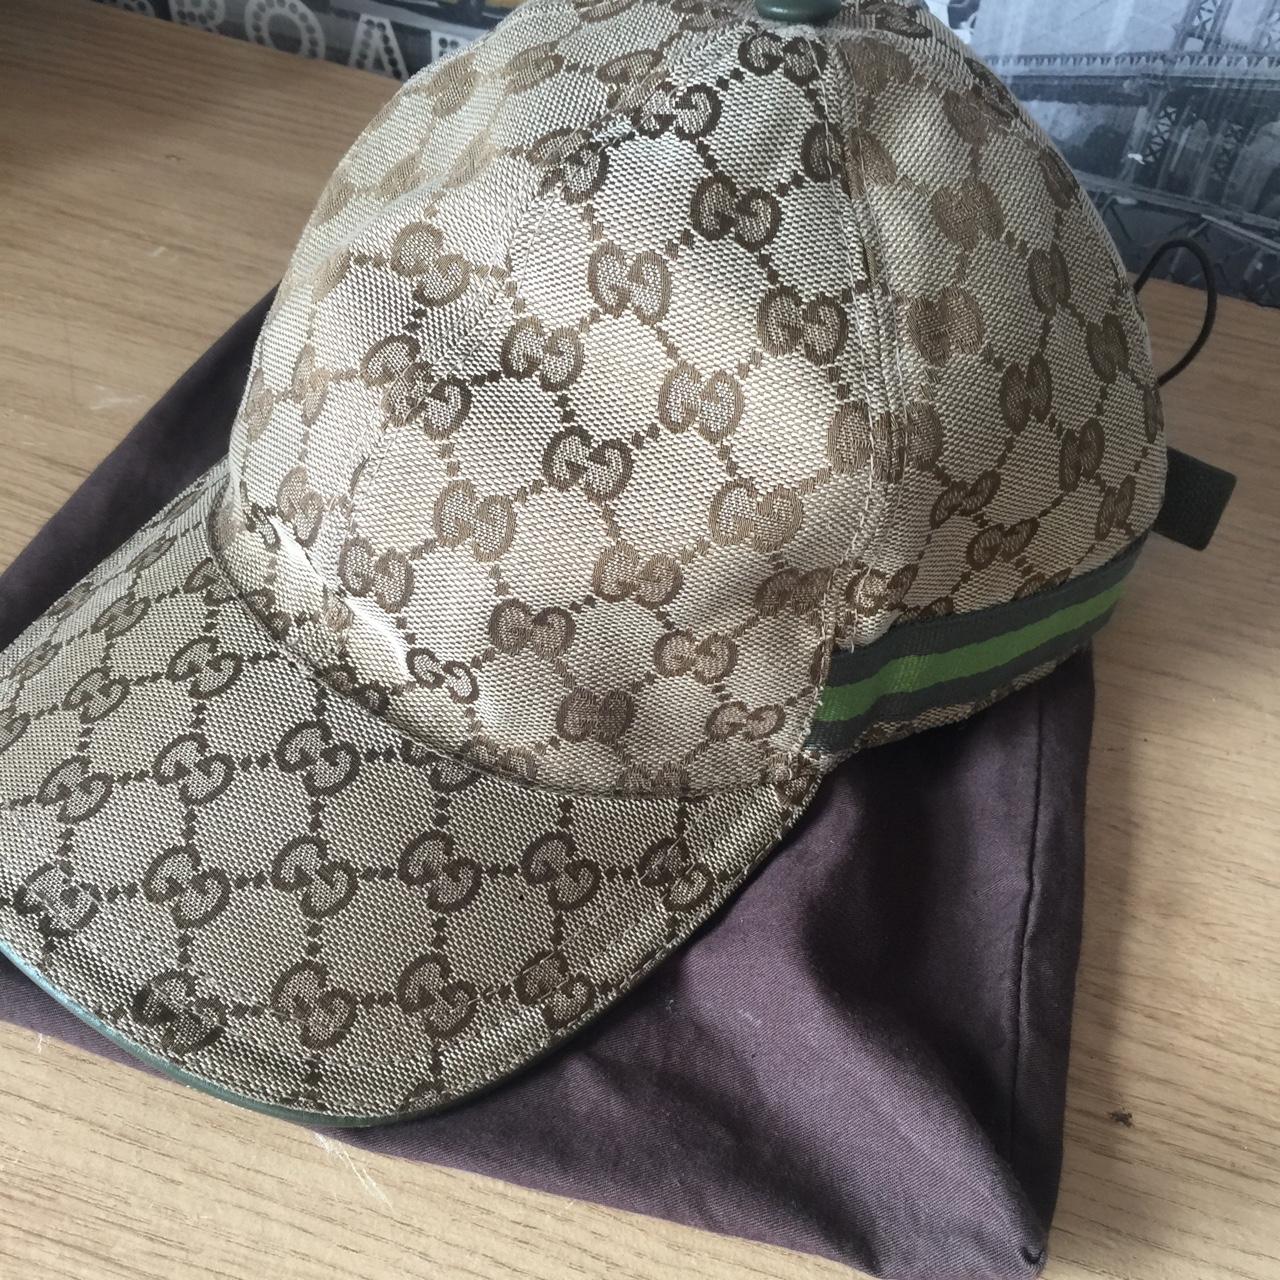 Rare limited edition Gucci cap in 10/10 condition